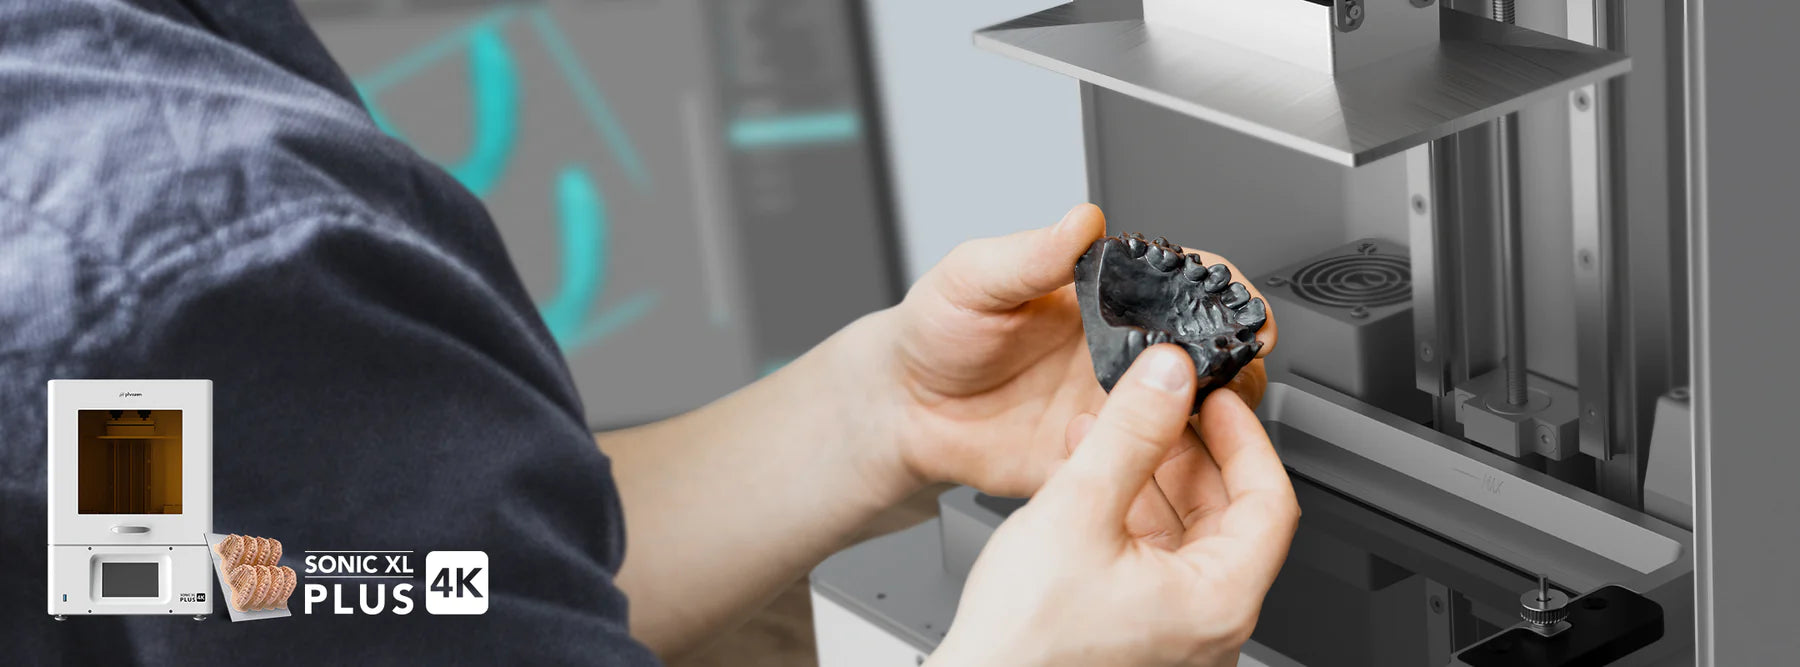 Phrozen Sonic XL 4K PLUS Resin 3D Printer